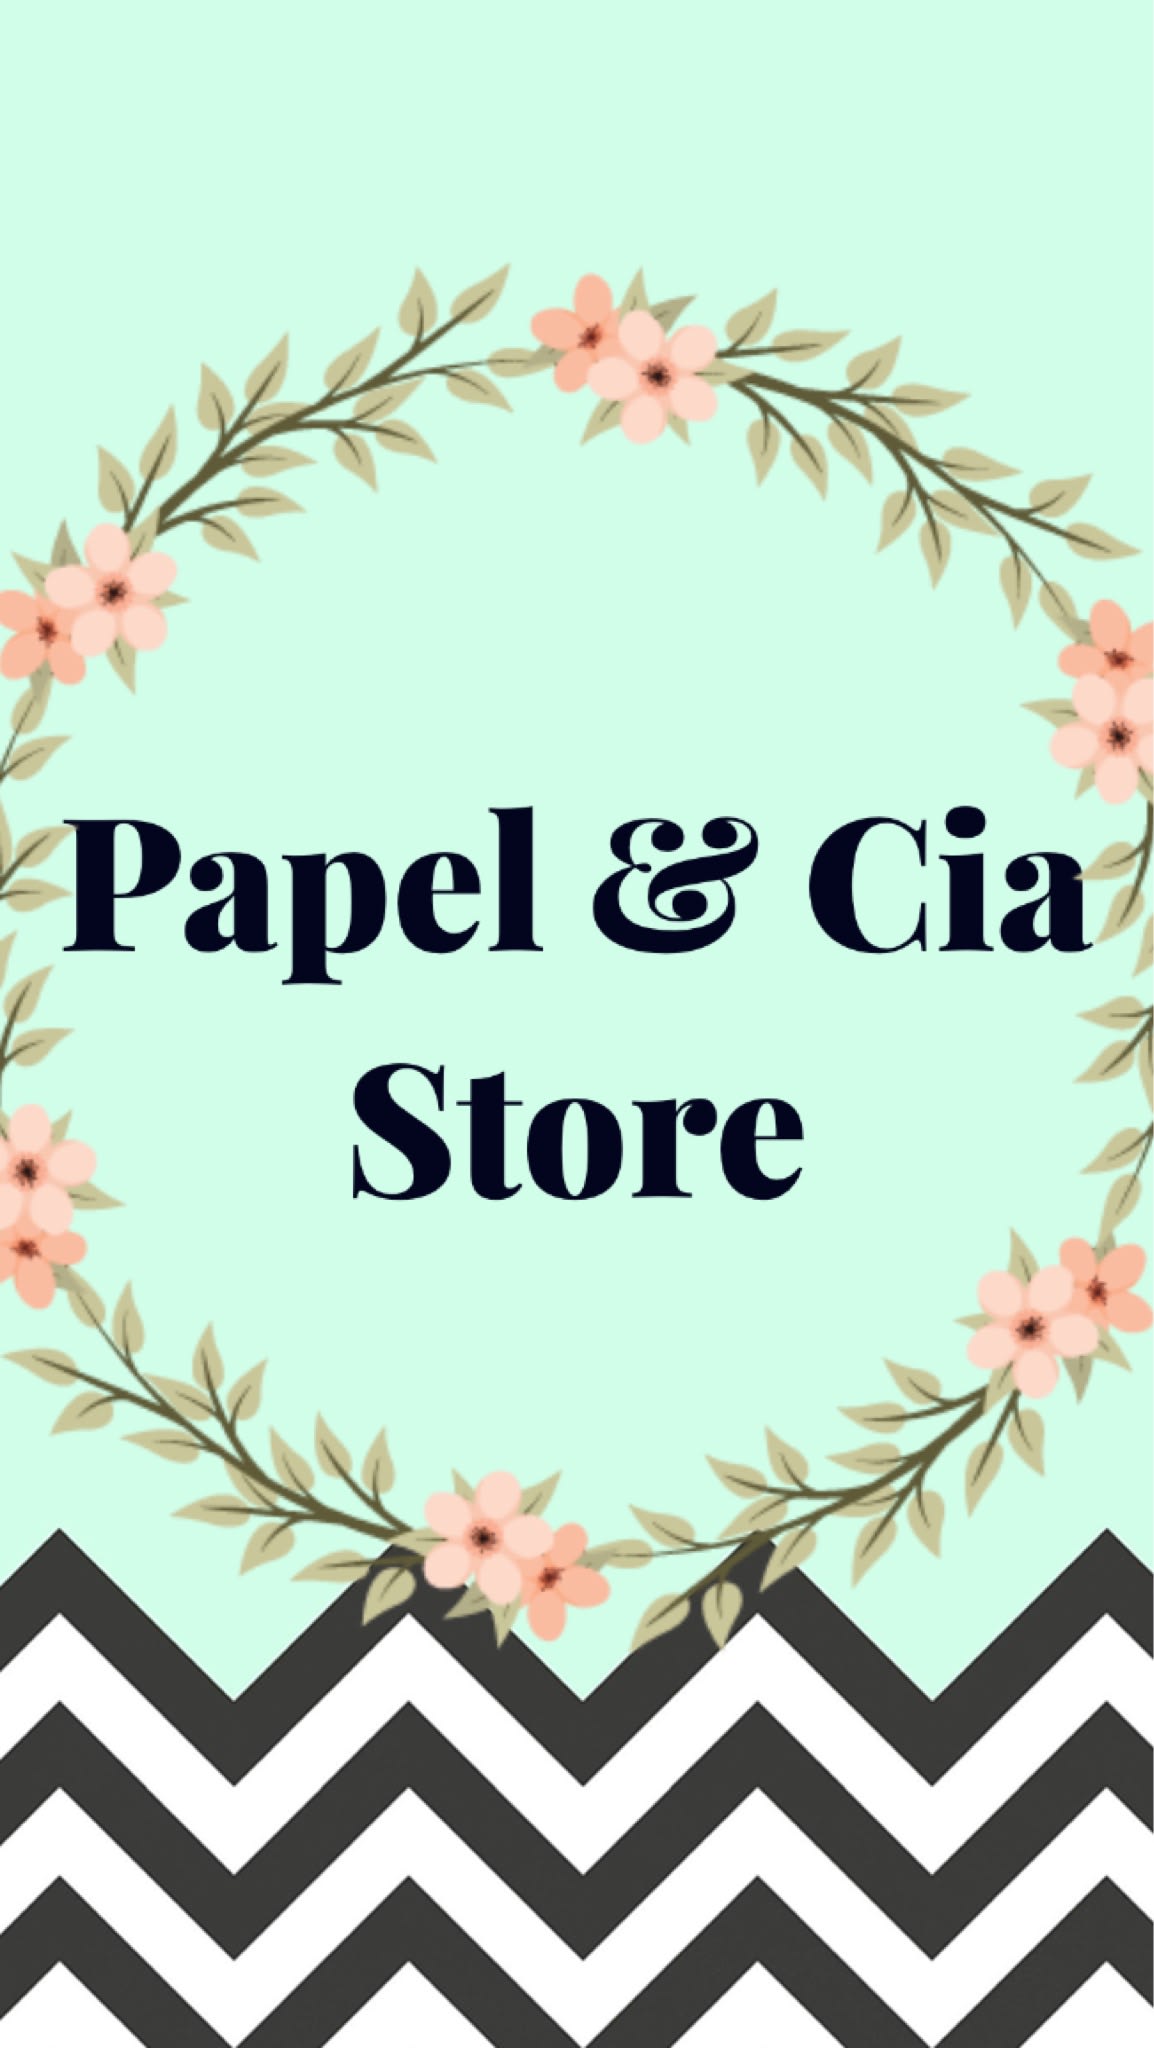 Papel & Cia Store